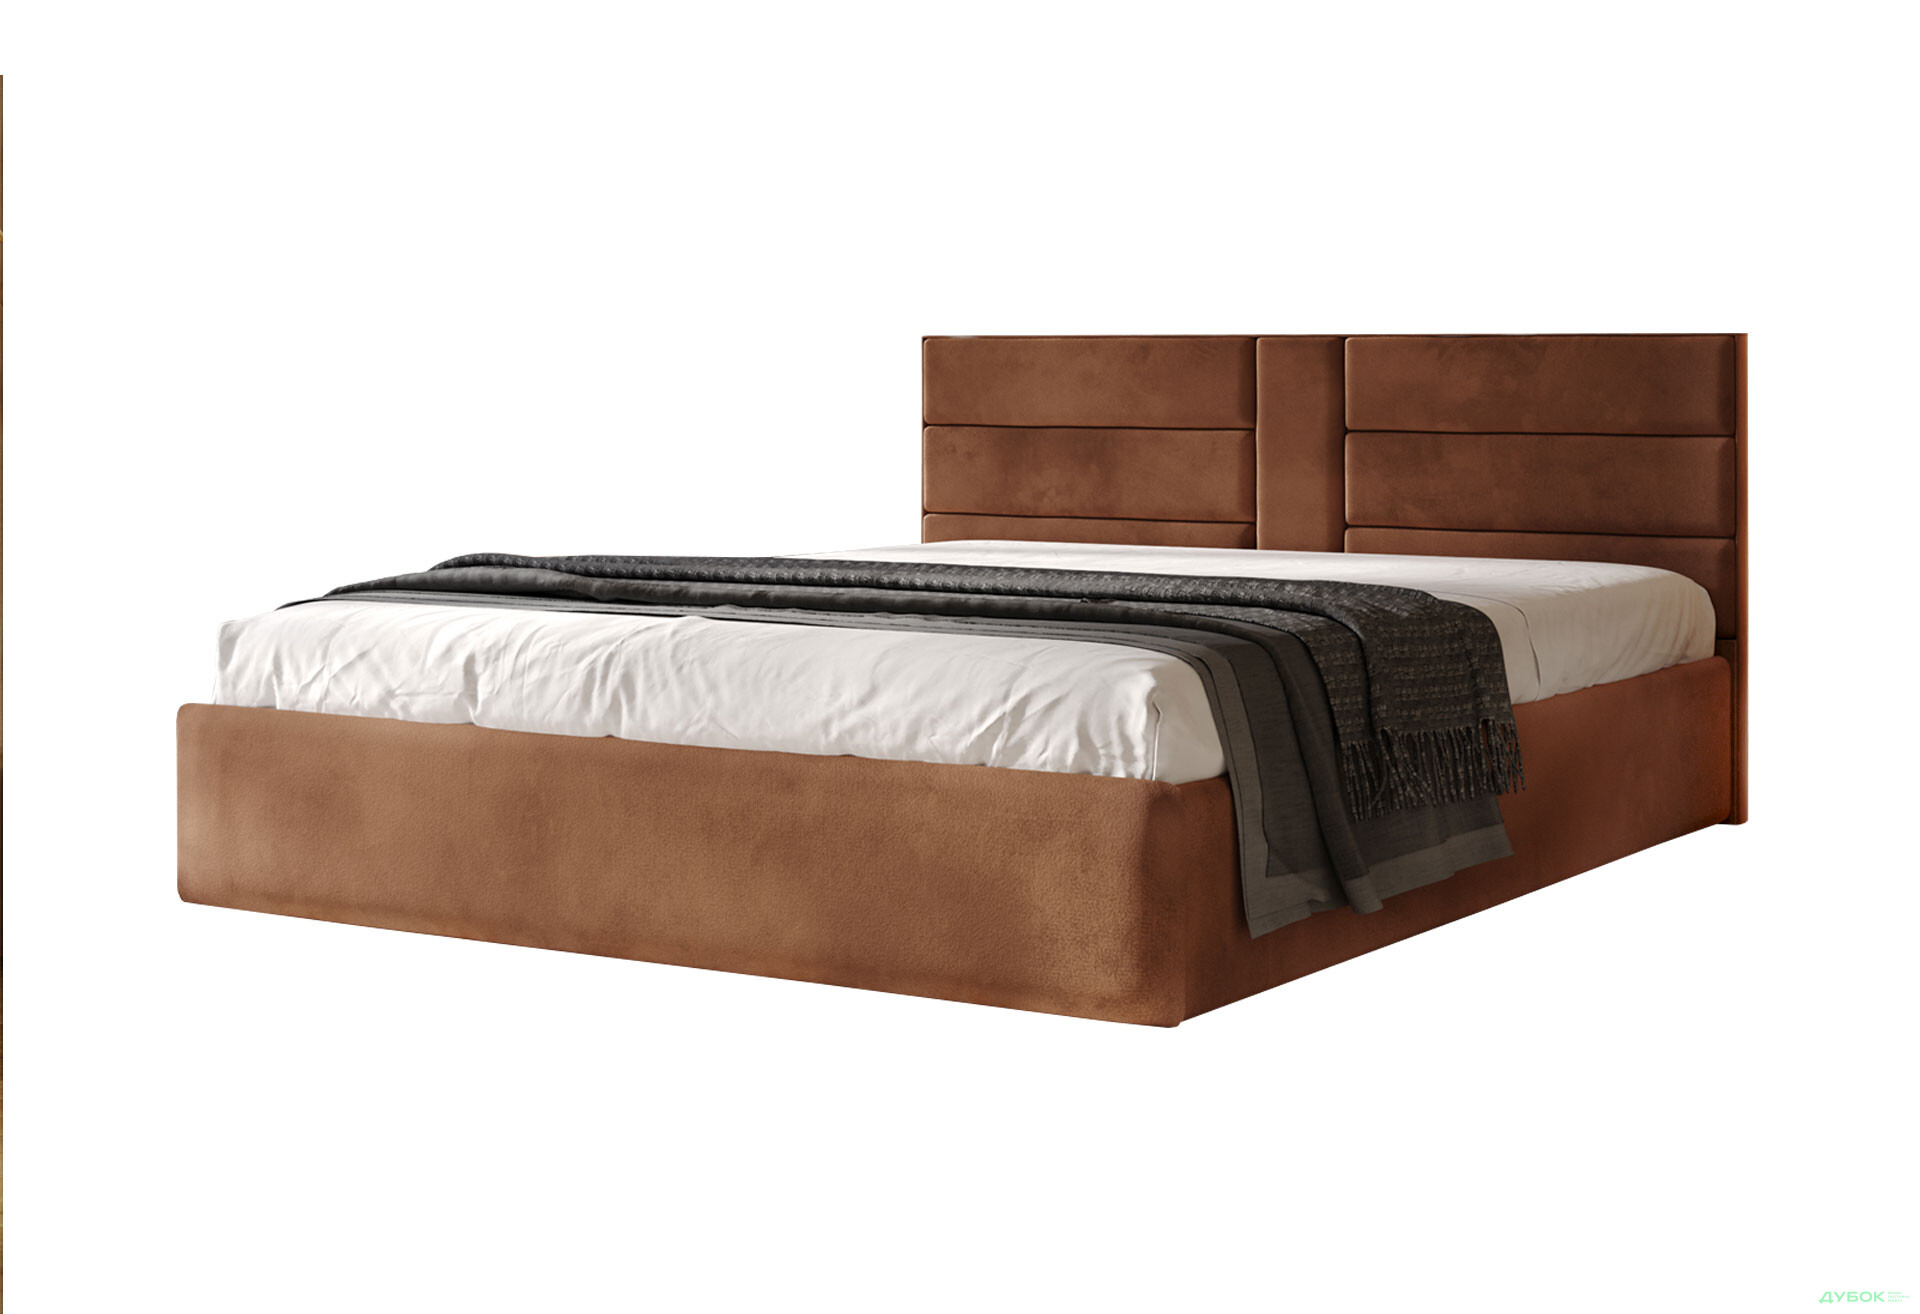 Фото 1 - Кровать Арбор Древ Виктория 180х200, сосна, подъемное, металлический каркас, коричневый (Лагуна 15)